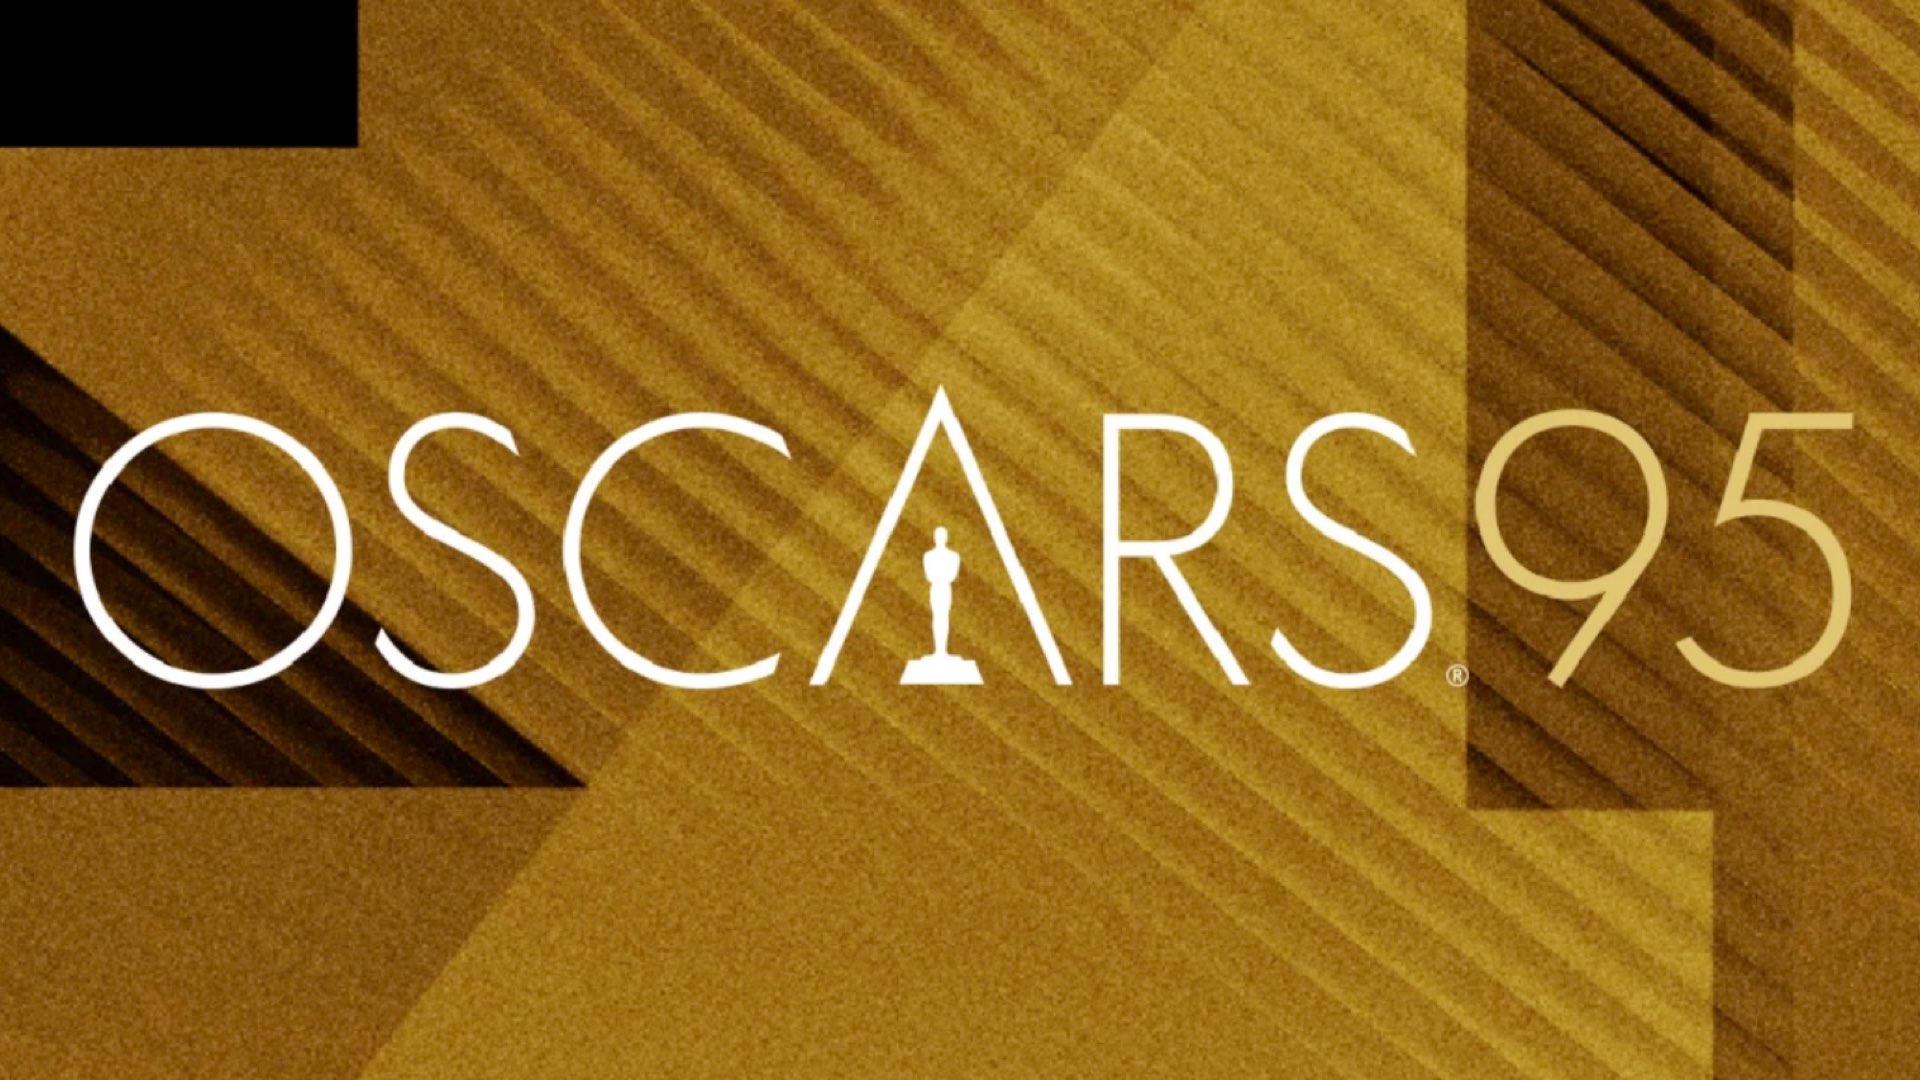 Oscars 2023. Image: Oscars.org